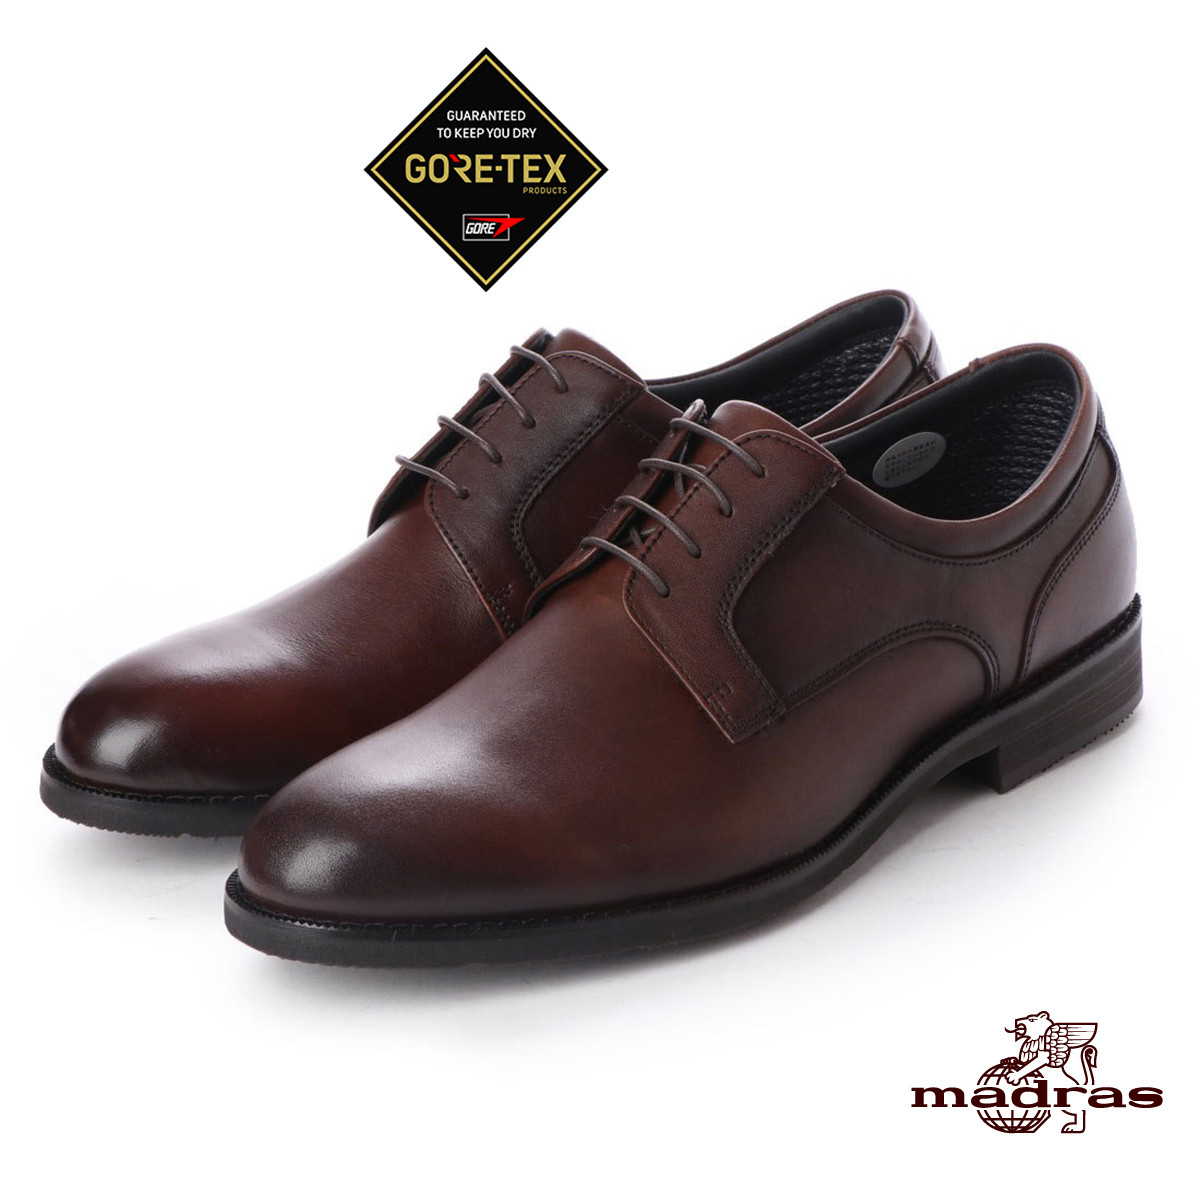 
madras Walk(マドラスウォーク)の紳士靴 MW5906 ダークブラウン 26.5cm【1343243】
